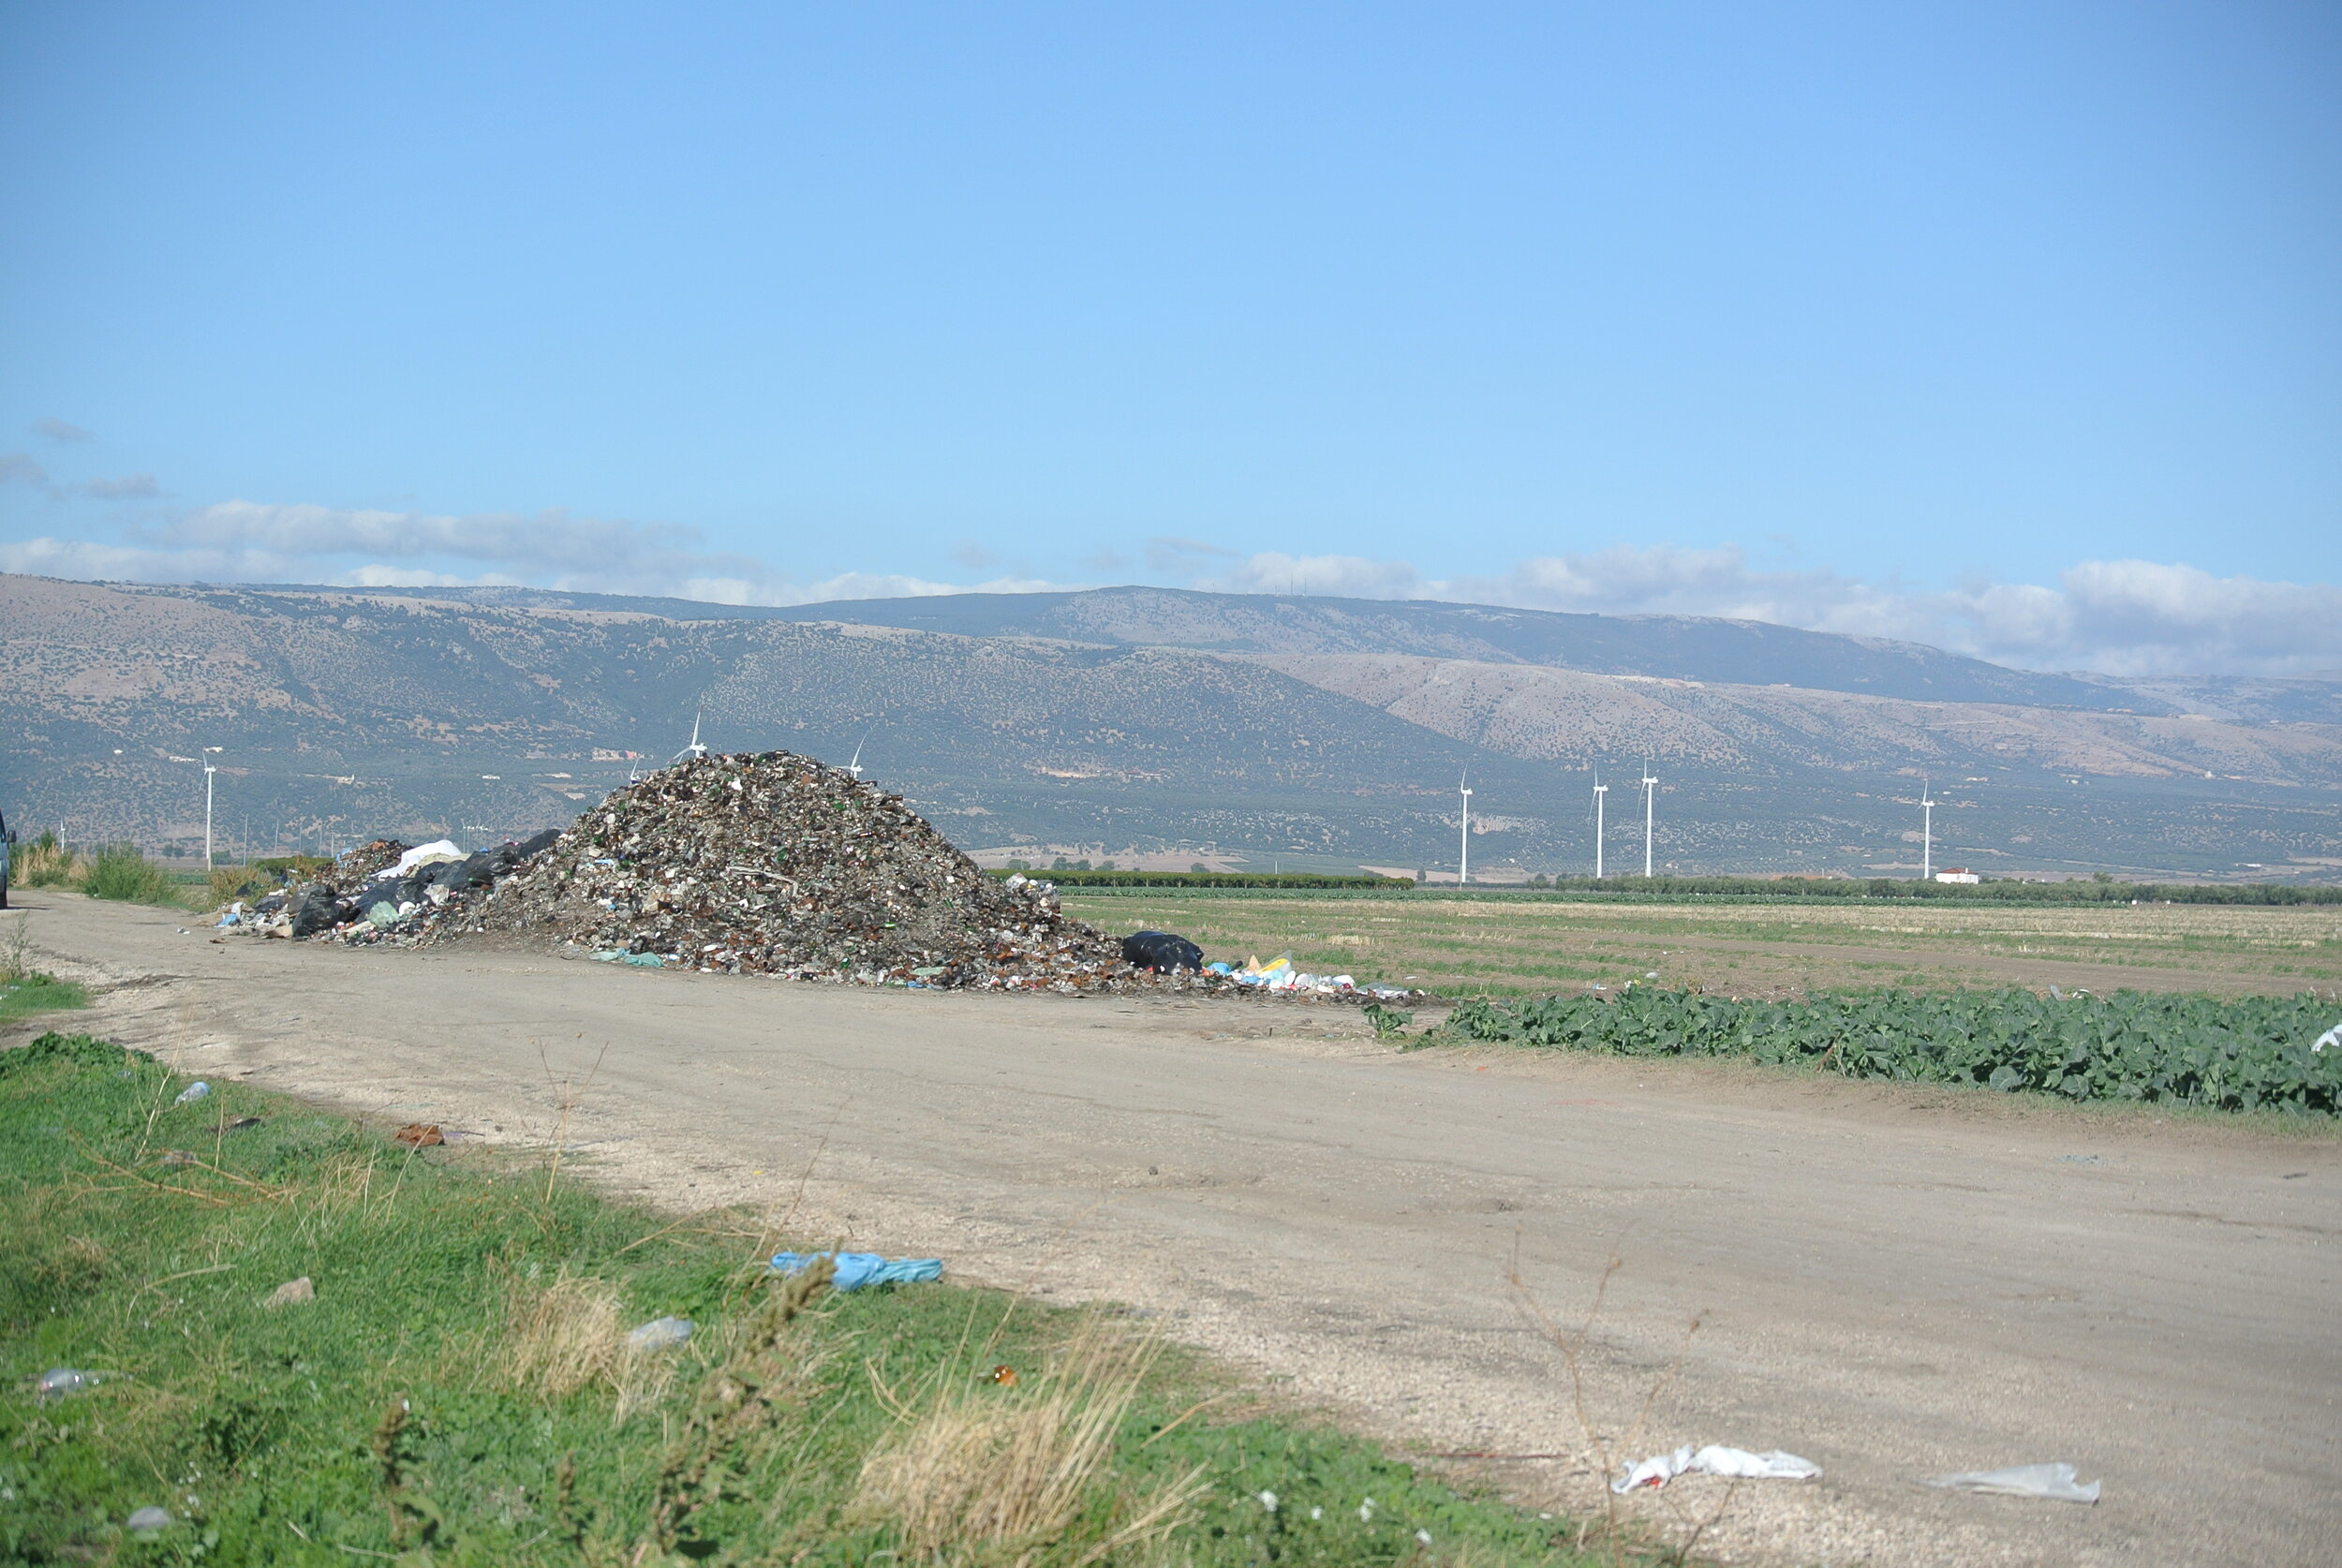   La montagna di rifiuti esposta all’inizio dell’ultima strada per il Gran Ghetto. Foggia. 8 ottobre 2019. ©Pamela Kerpius  